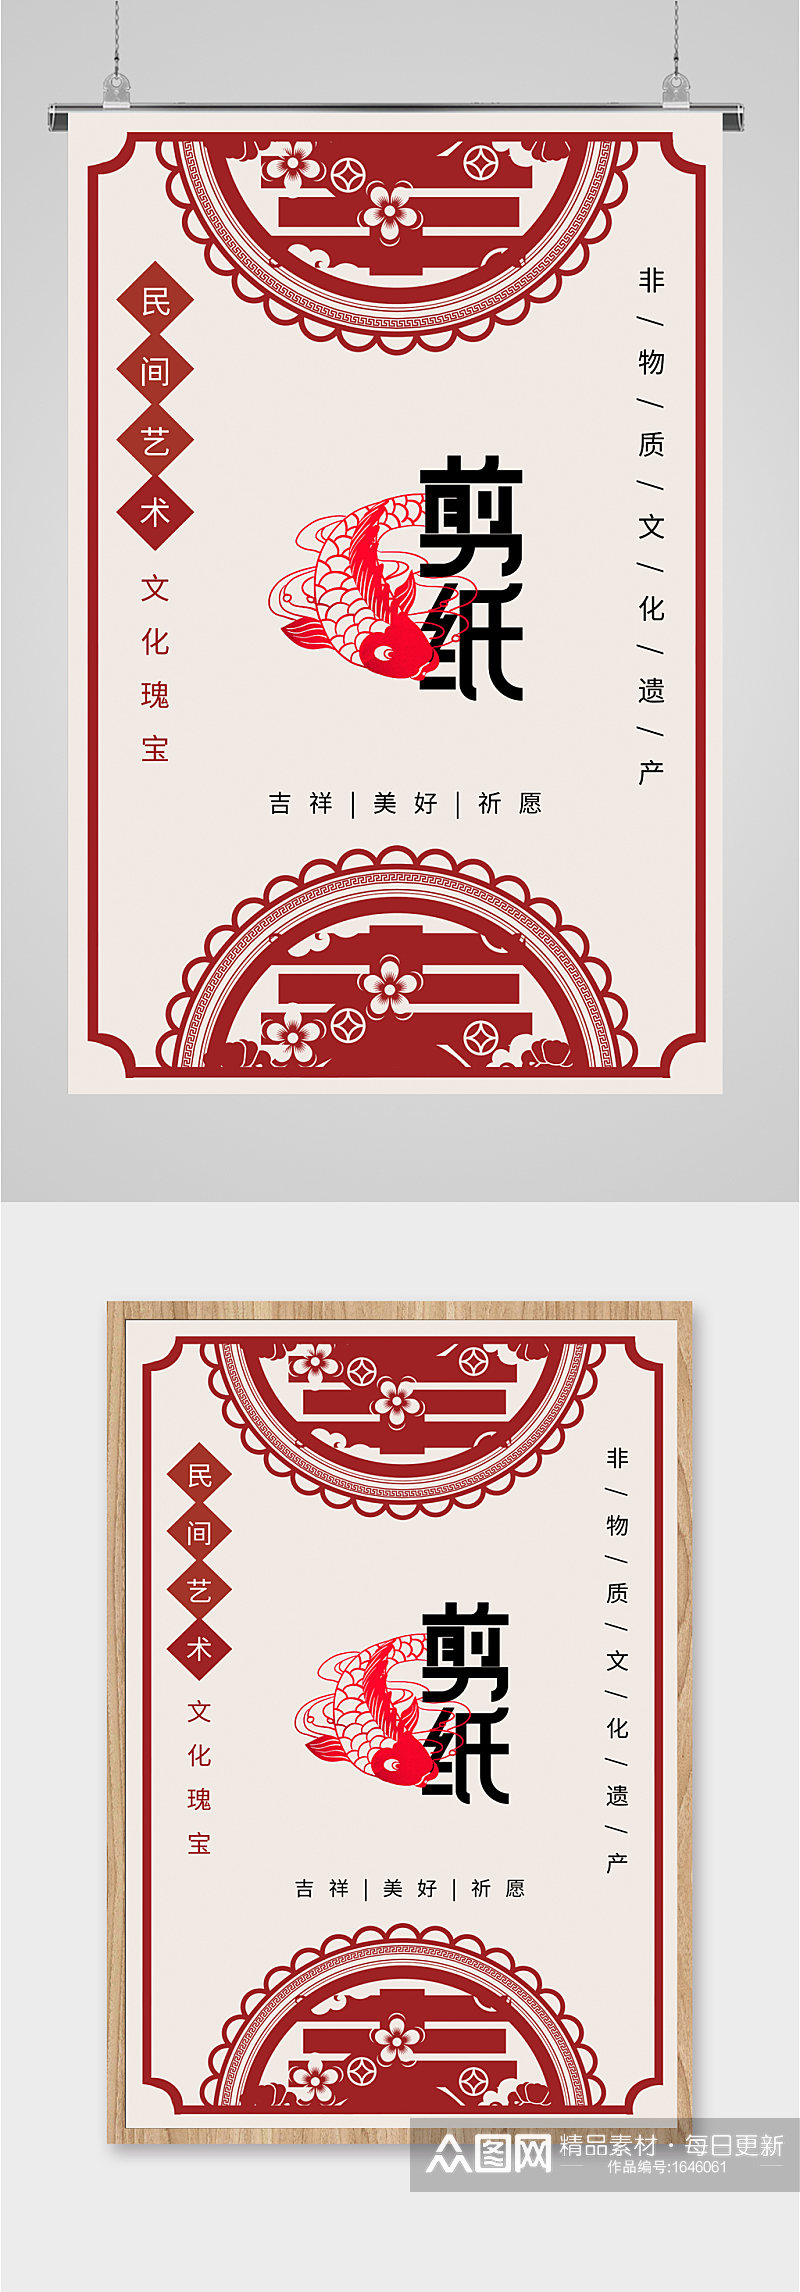 中国剪纸文化宣传海报素材